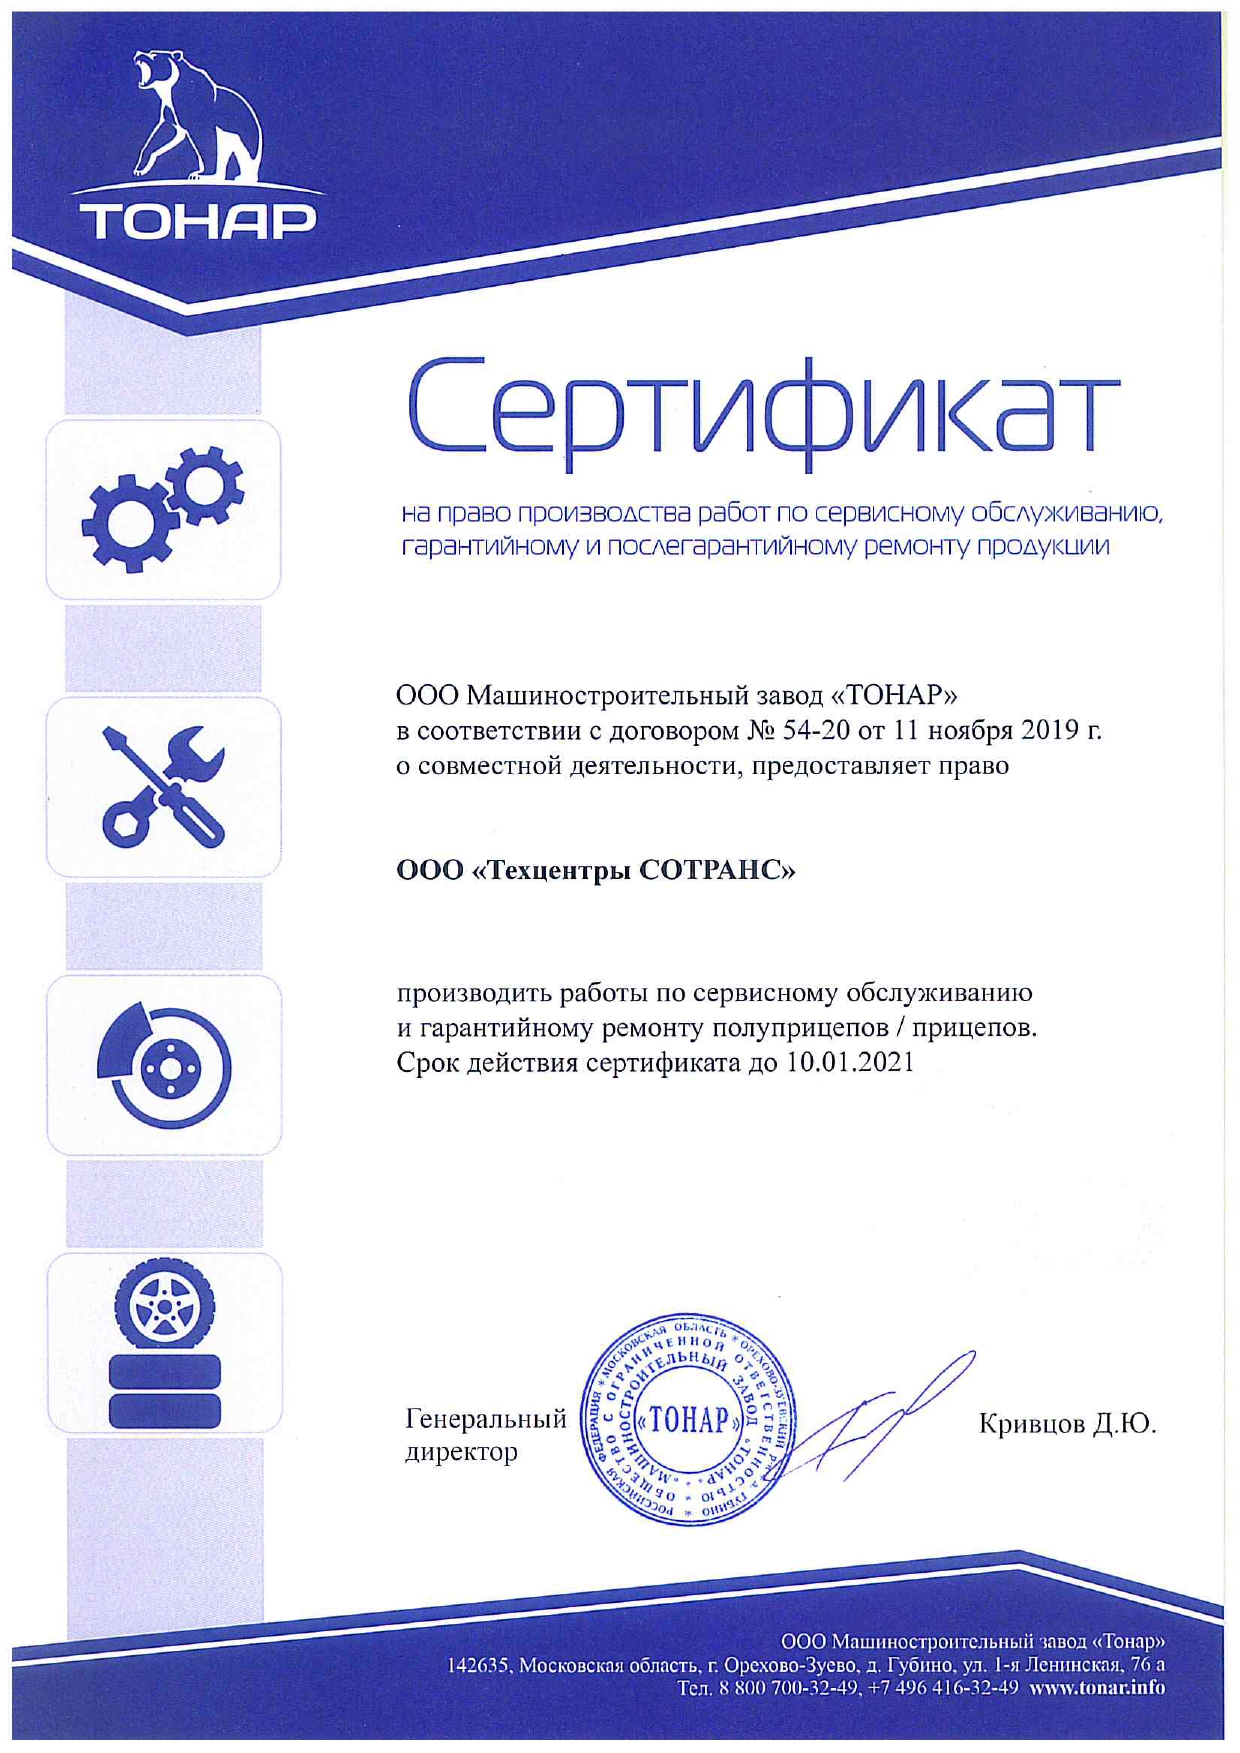 Компания «Техцентры СОТРАНС» получила сертификат